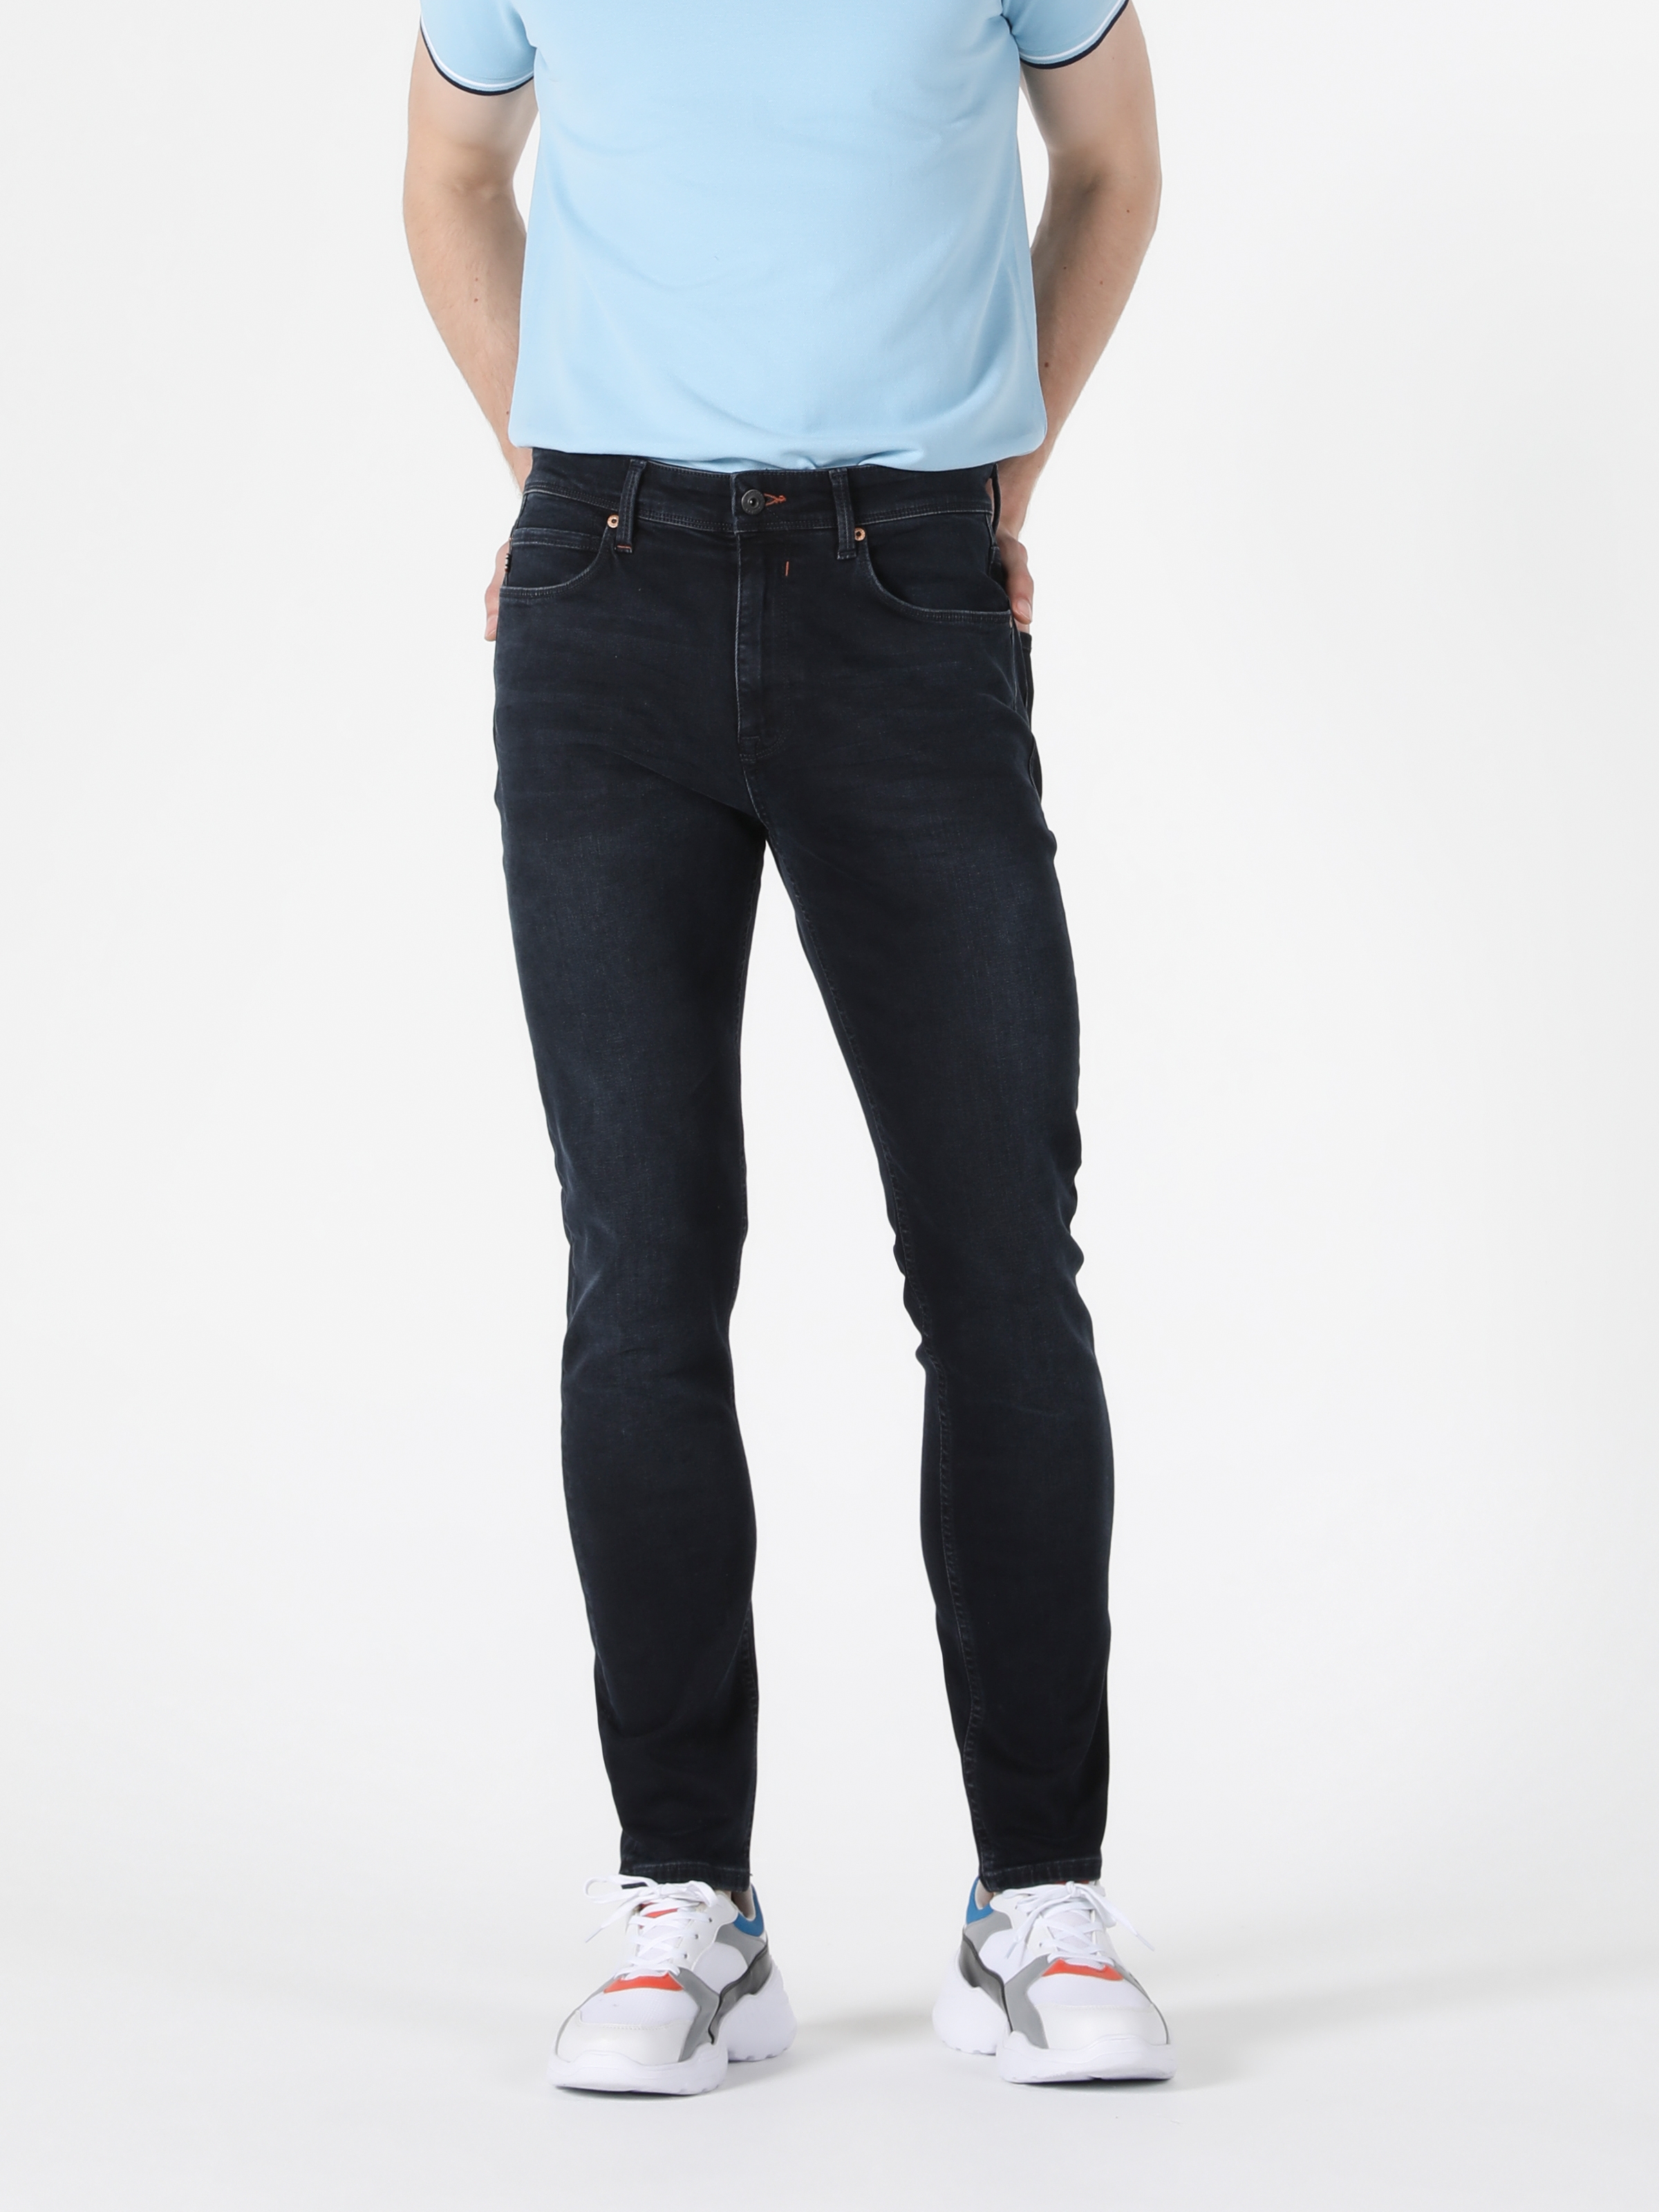 Afficher les détails de Pantalon En Jean Bleu Marine Pour Homme, Coupe Super Slim, Taille Haute, Jambe Skinny, 35 Ryan